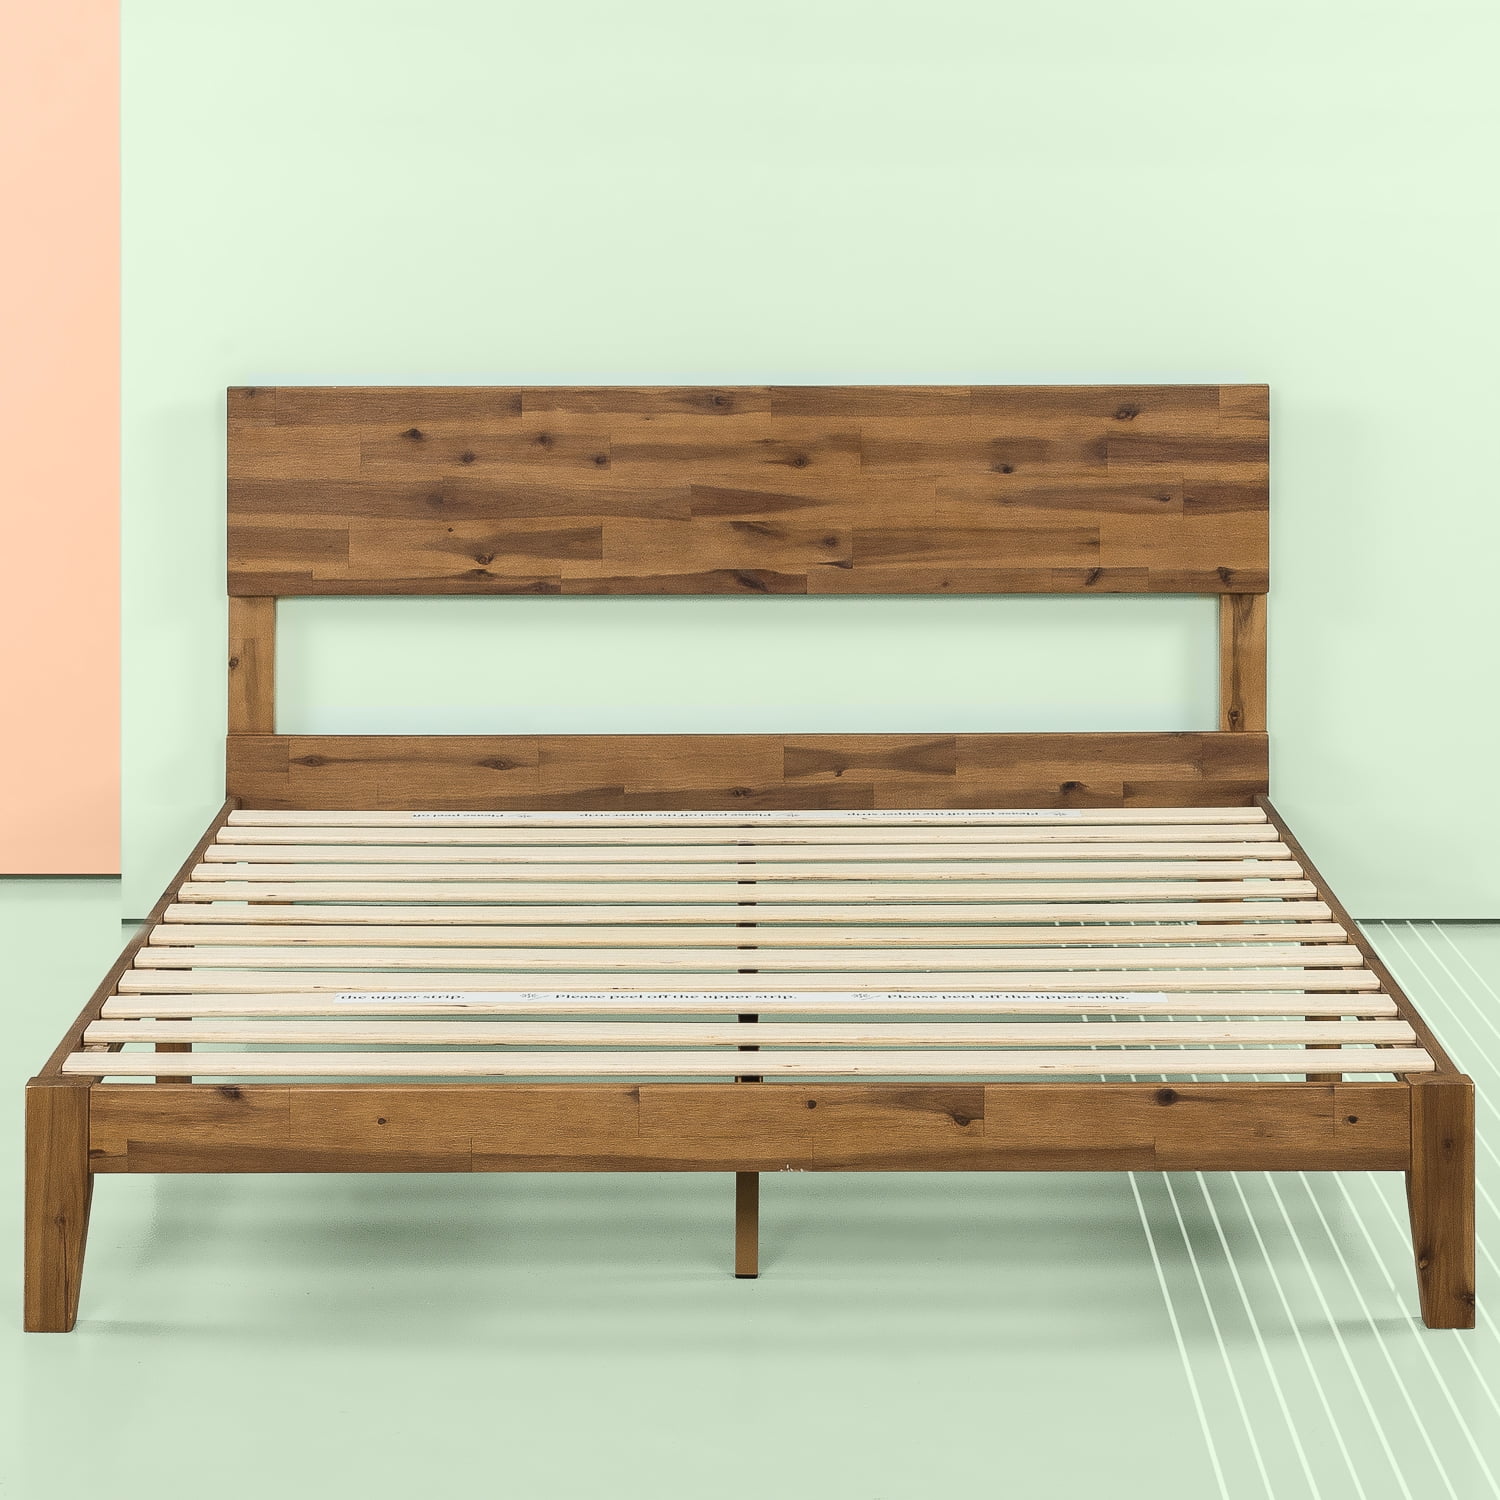 Zinus Julia 10 Wood Platform Bed Frame, Wooden Platform Bed Frame With Headboard